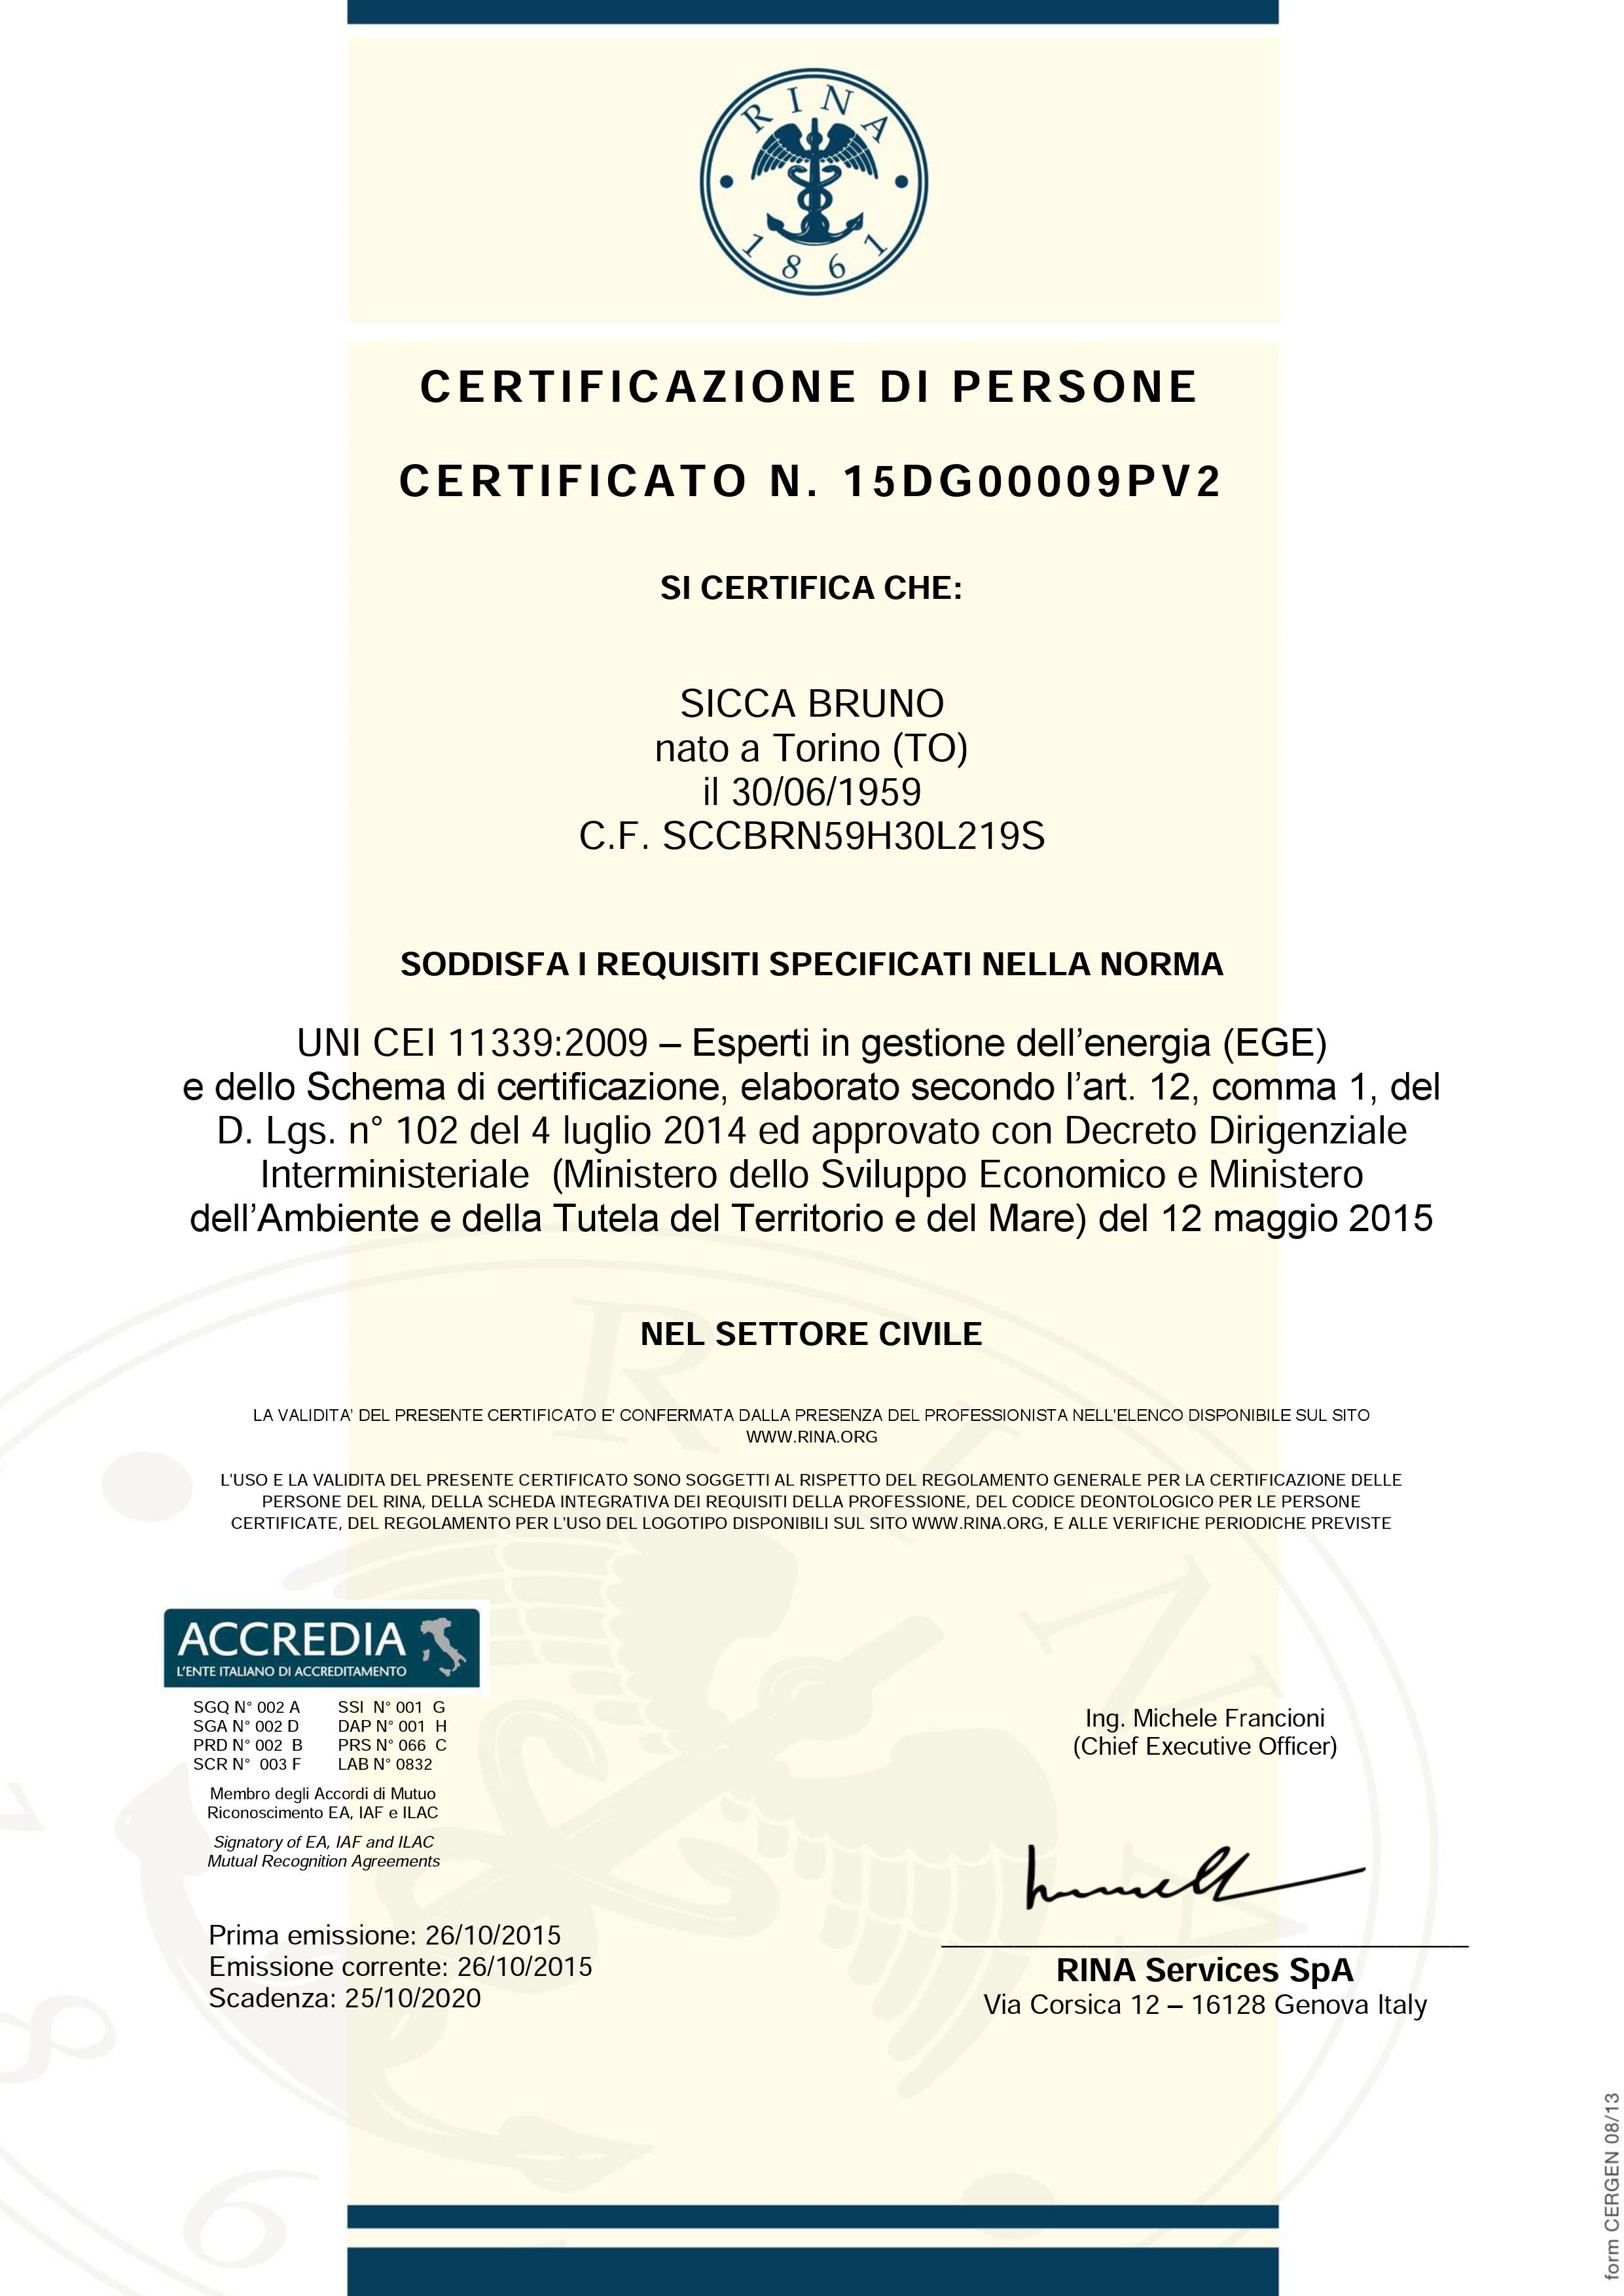 Certificato EGE Sicca Bruno